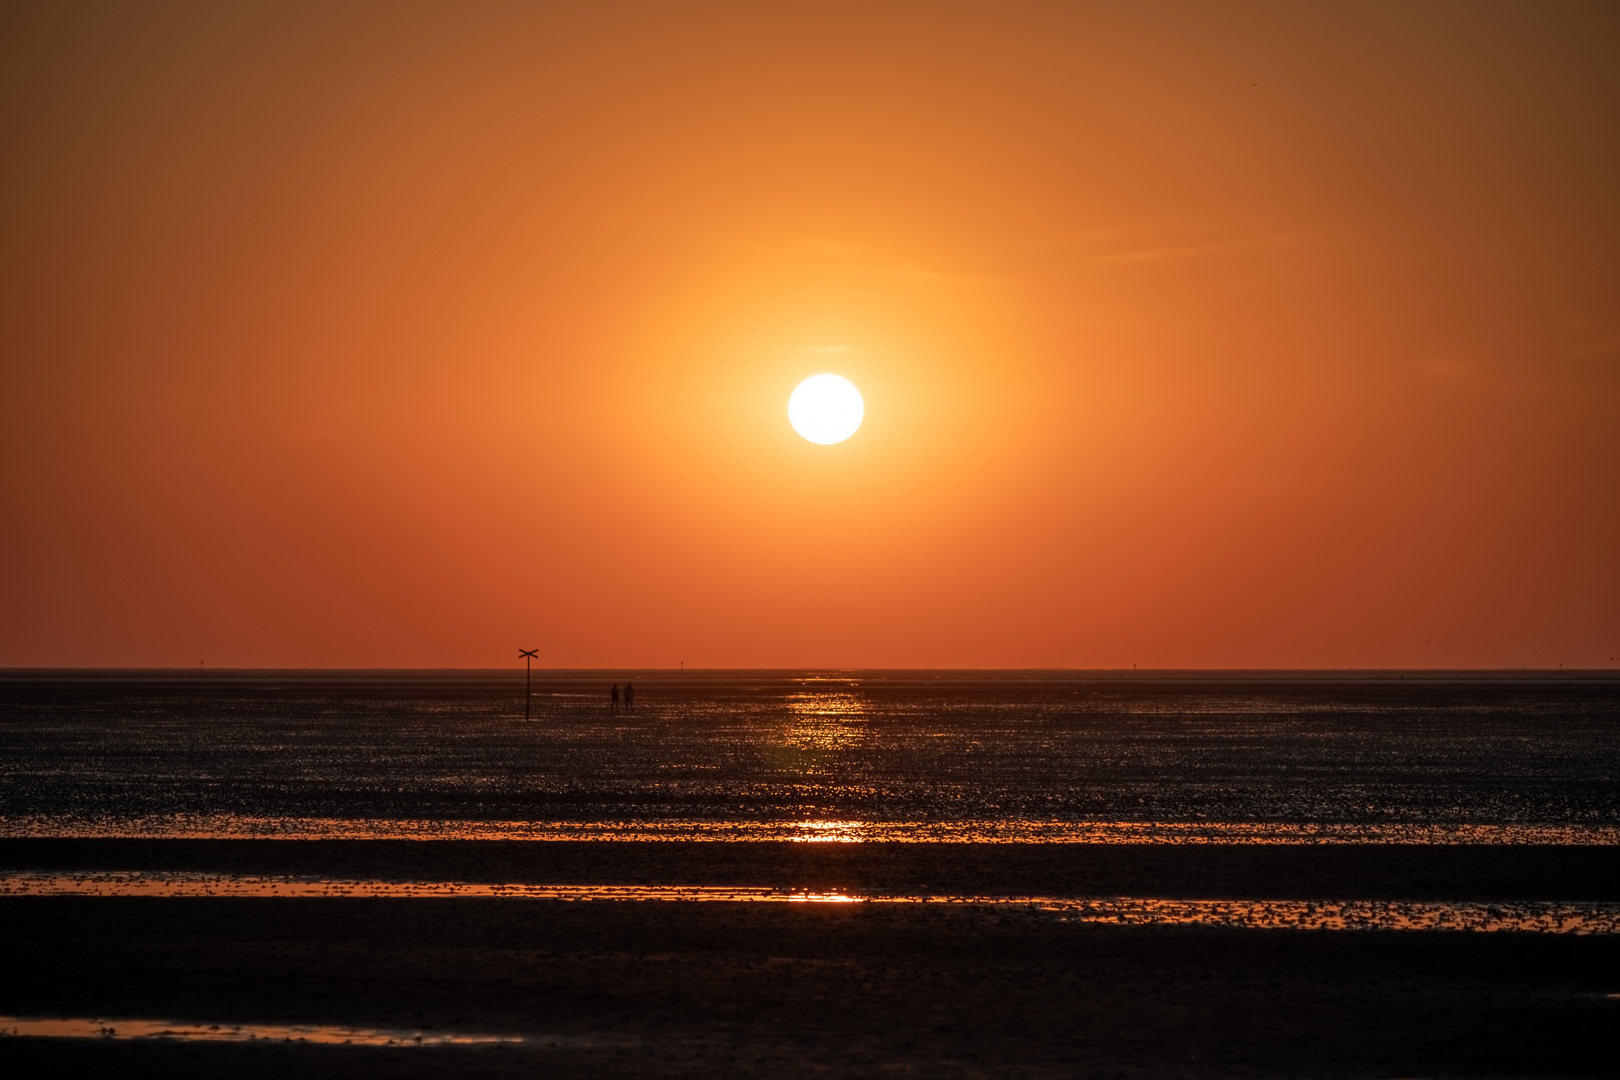 Sonnenuntergang Wattenmeer